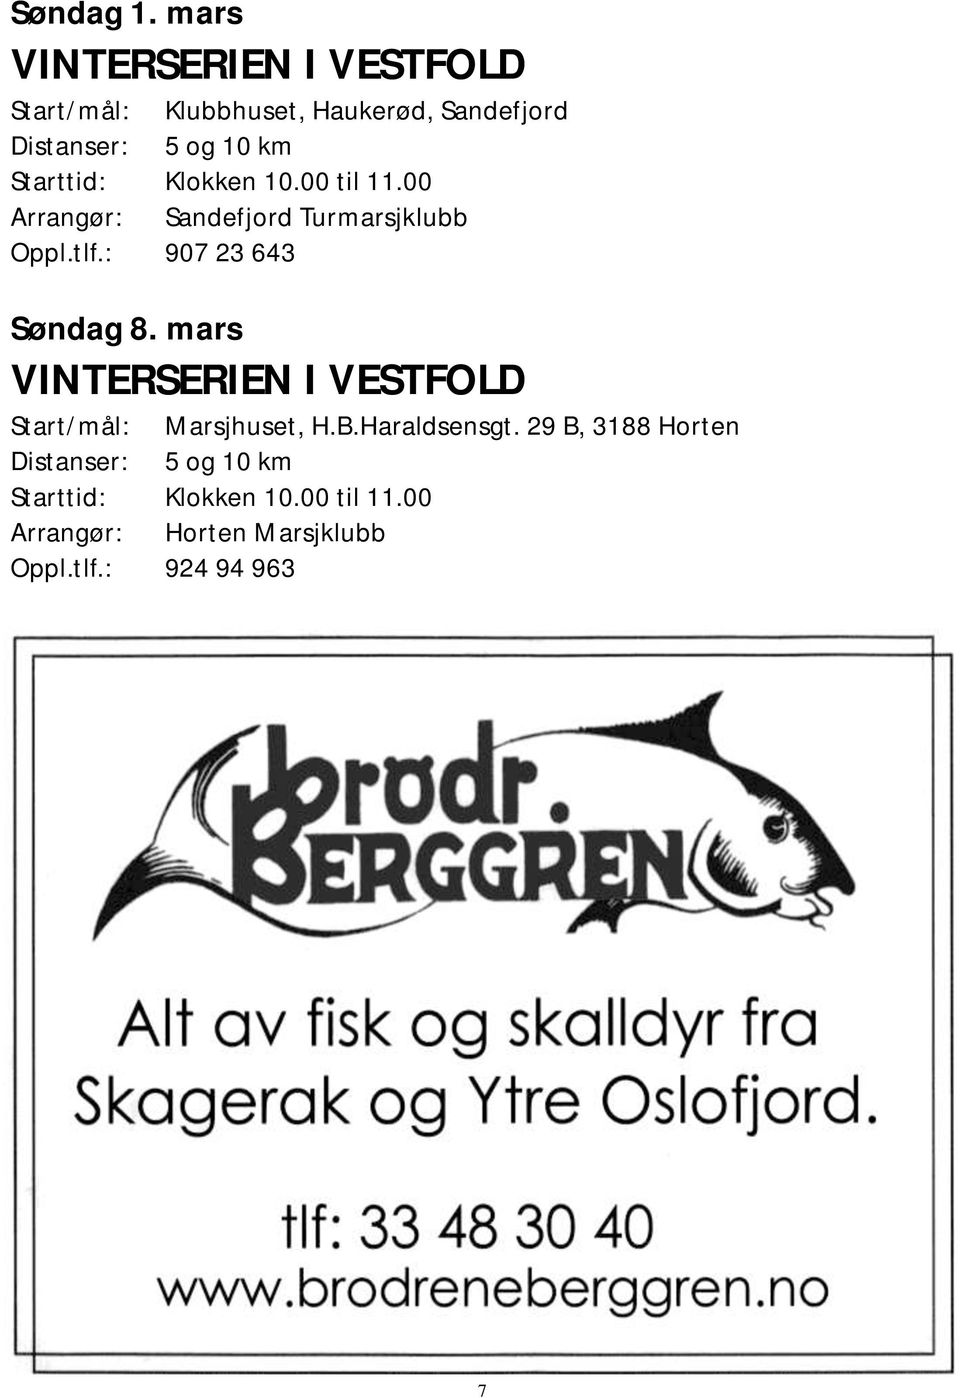 Sandefjord Arrangør: Sandefjord Turmarsjklubb Oppl.tlf.